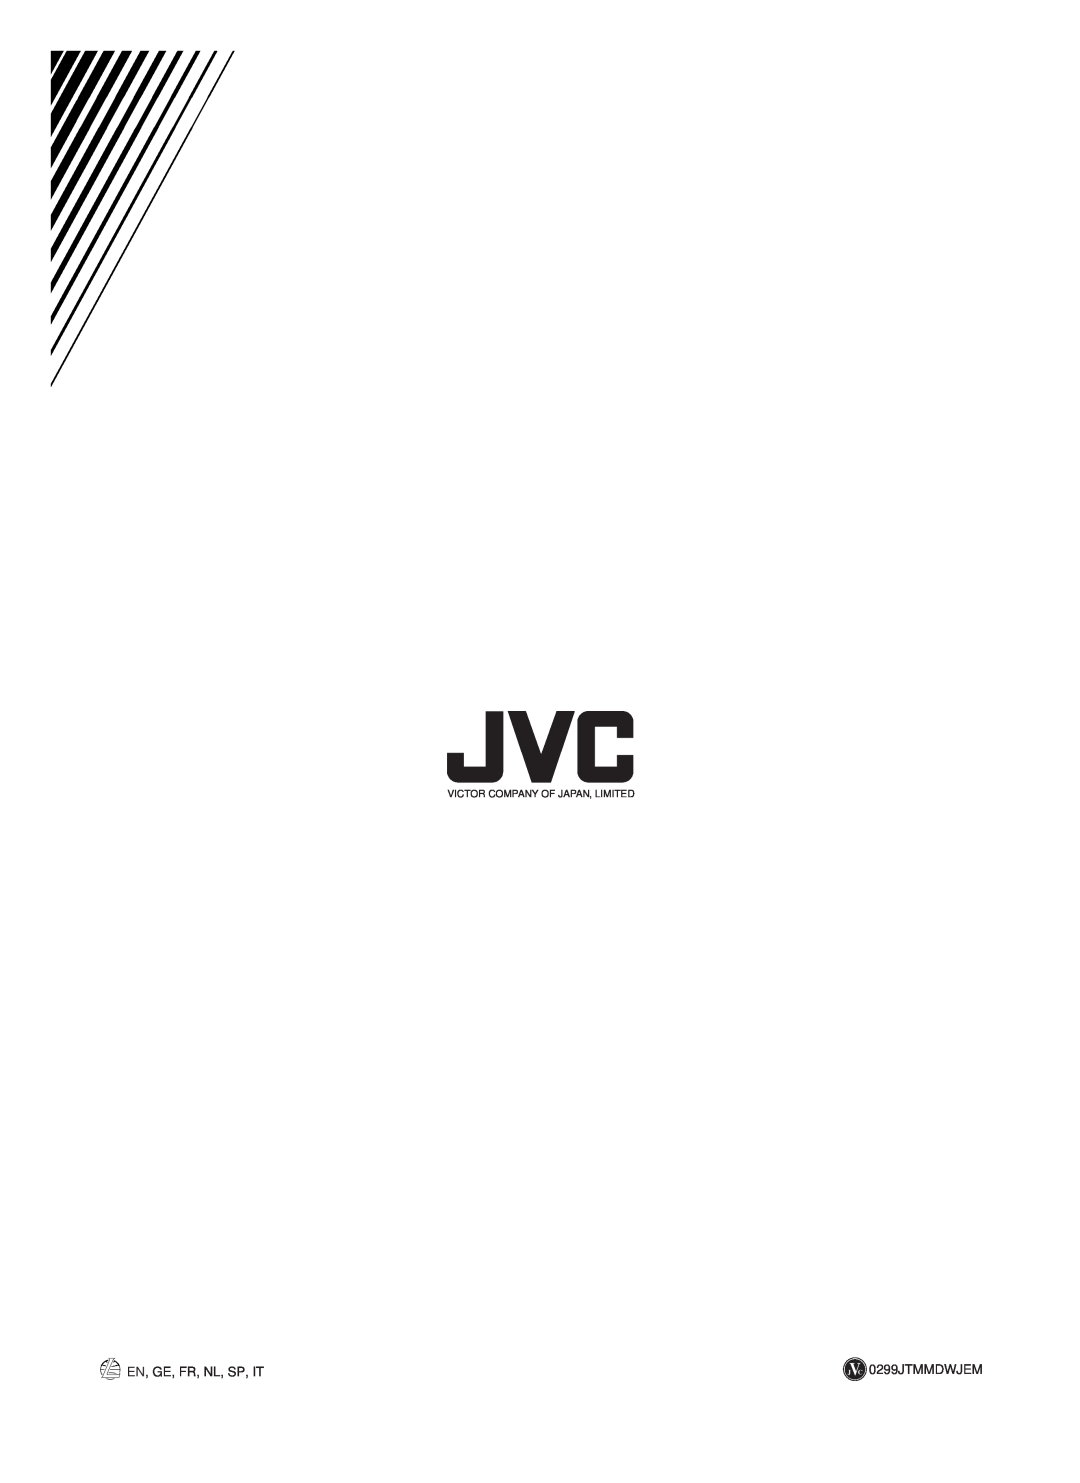 JVC RX-668RBK manual En, Ge, Fr, Nl, Sp, It, J C 0299JTMMDWJEM, Victor Company Of Japan, Limited 